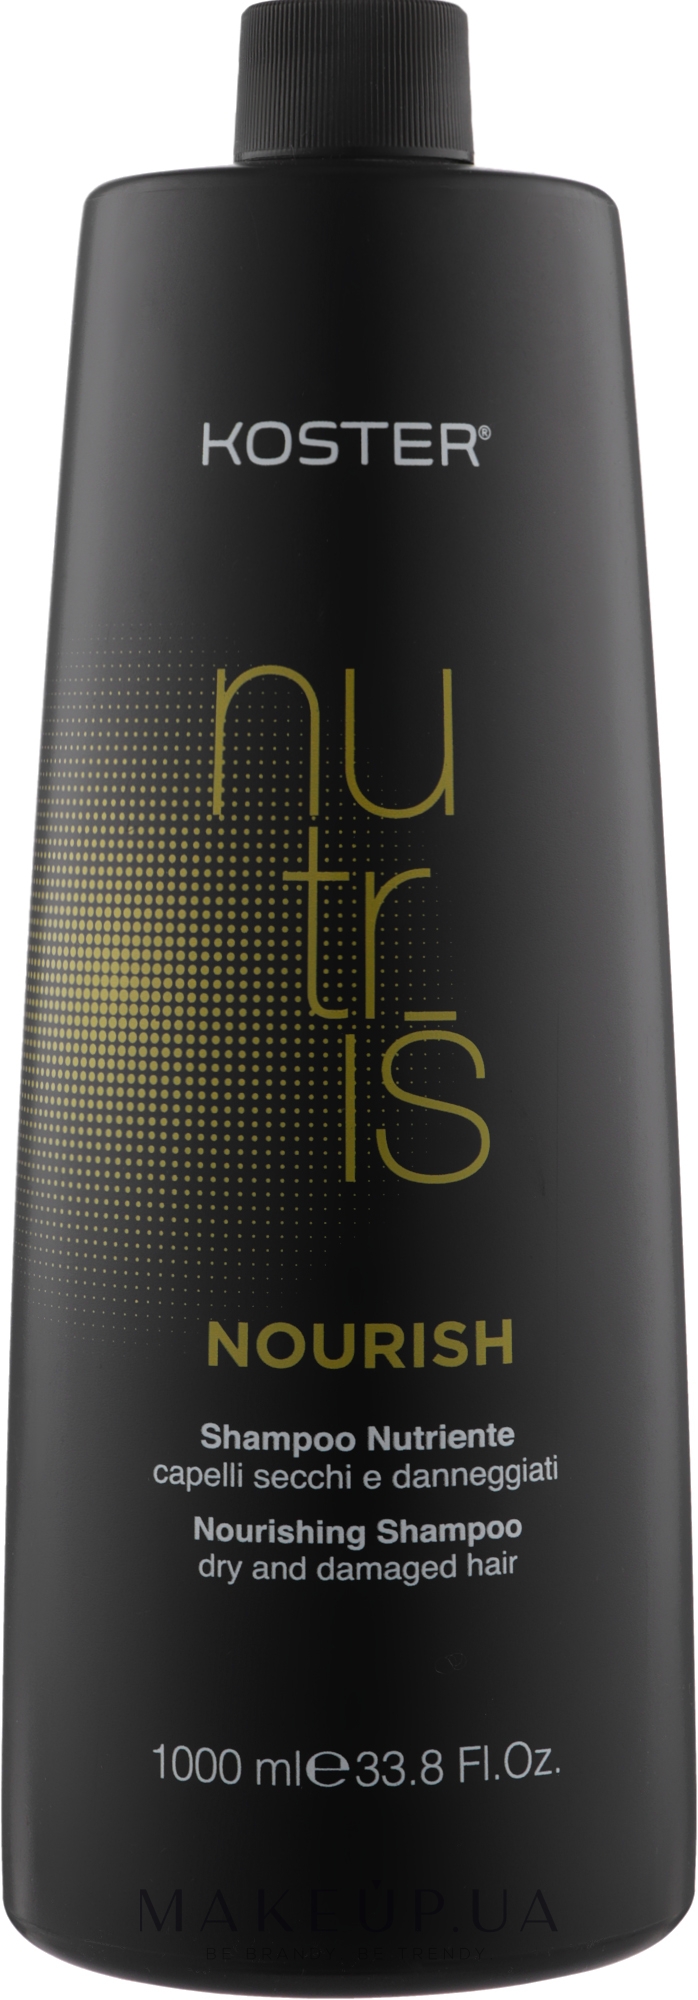 Шампунь для сухих и поврежденных волос - Koster Nutris Nourish Shampoo — фото 1000ml